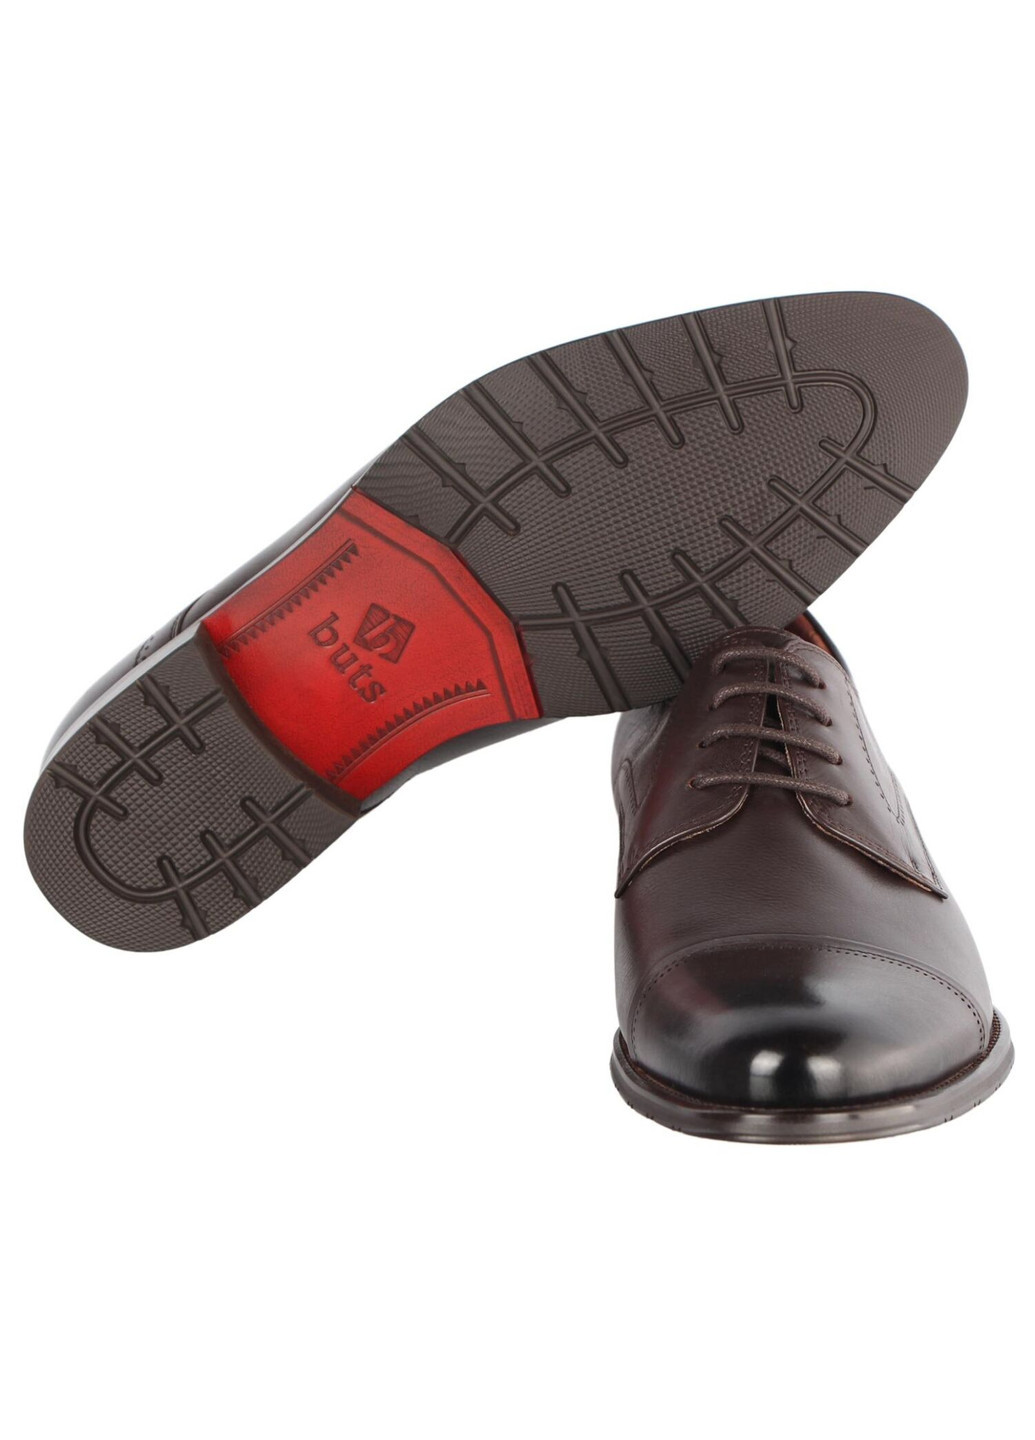 Коричневые мужские классические туфли 196399 Buts на шнурках